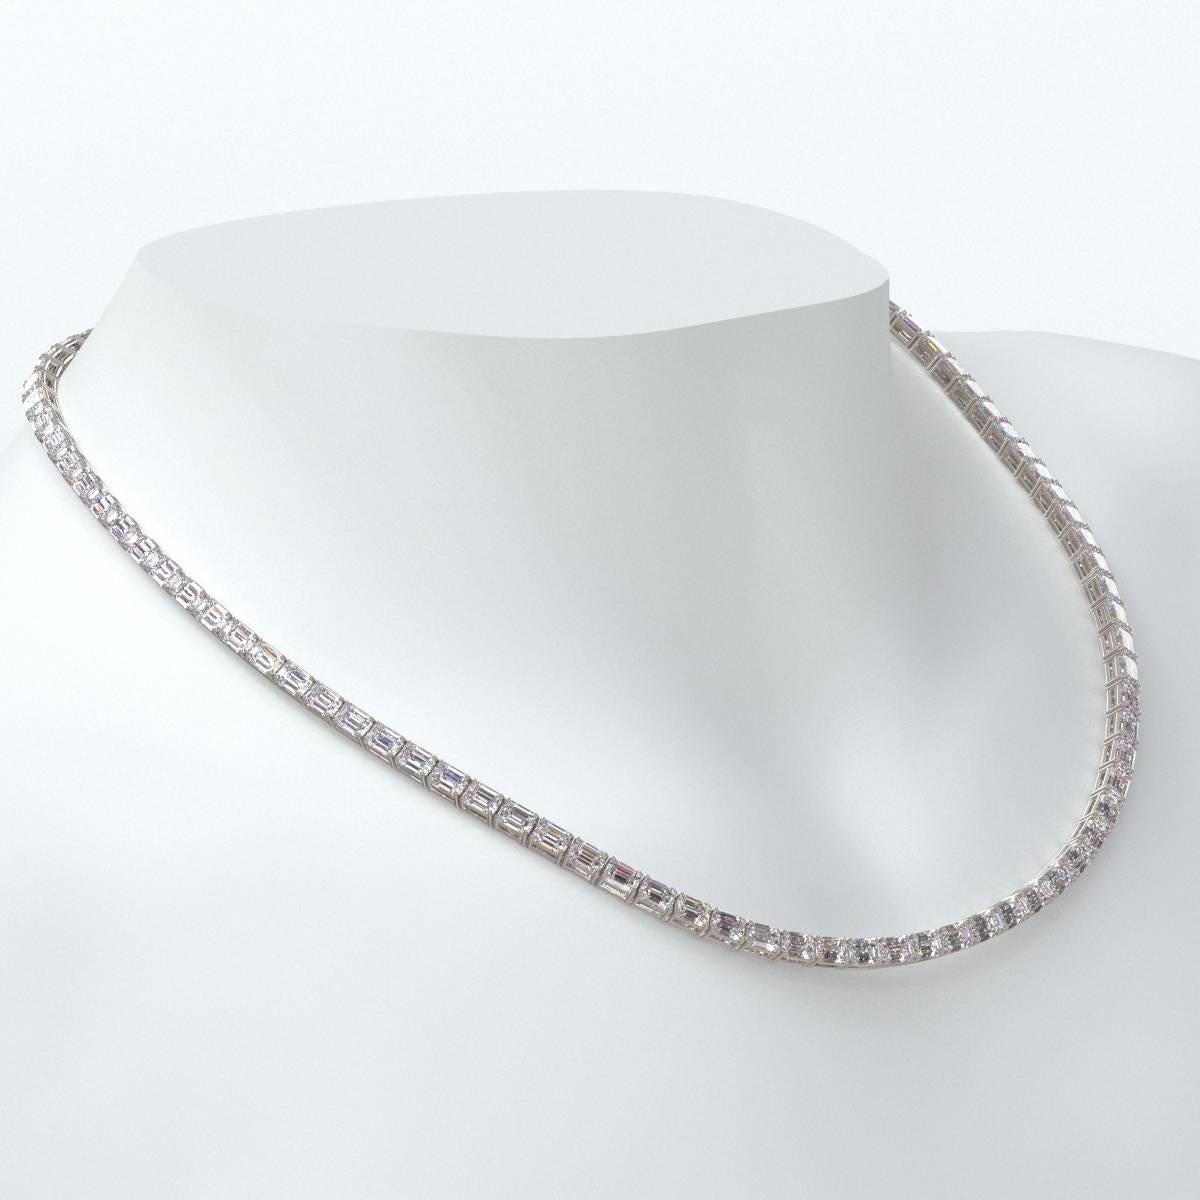 Emilio Jewelry Gia Certified 30.00 Carat Emerald Cut Diamond Necklace For Sale 1